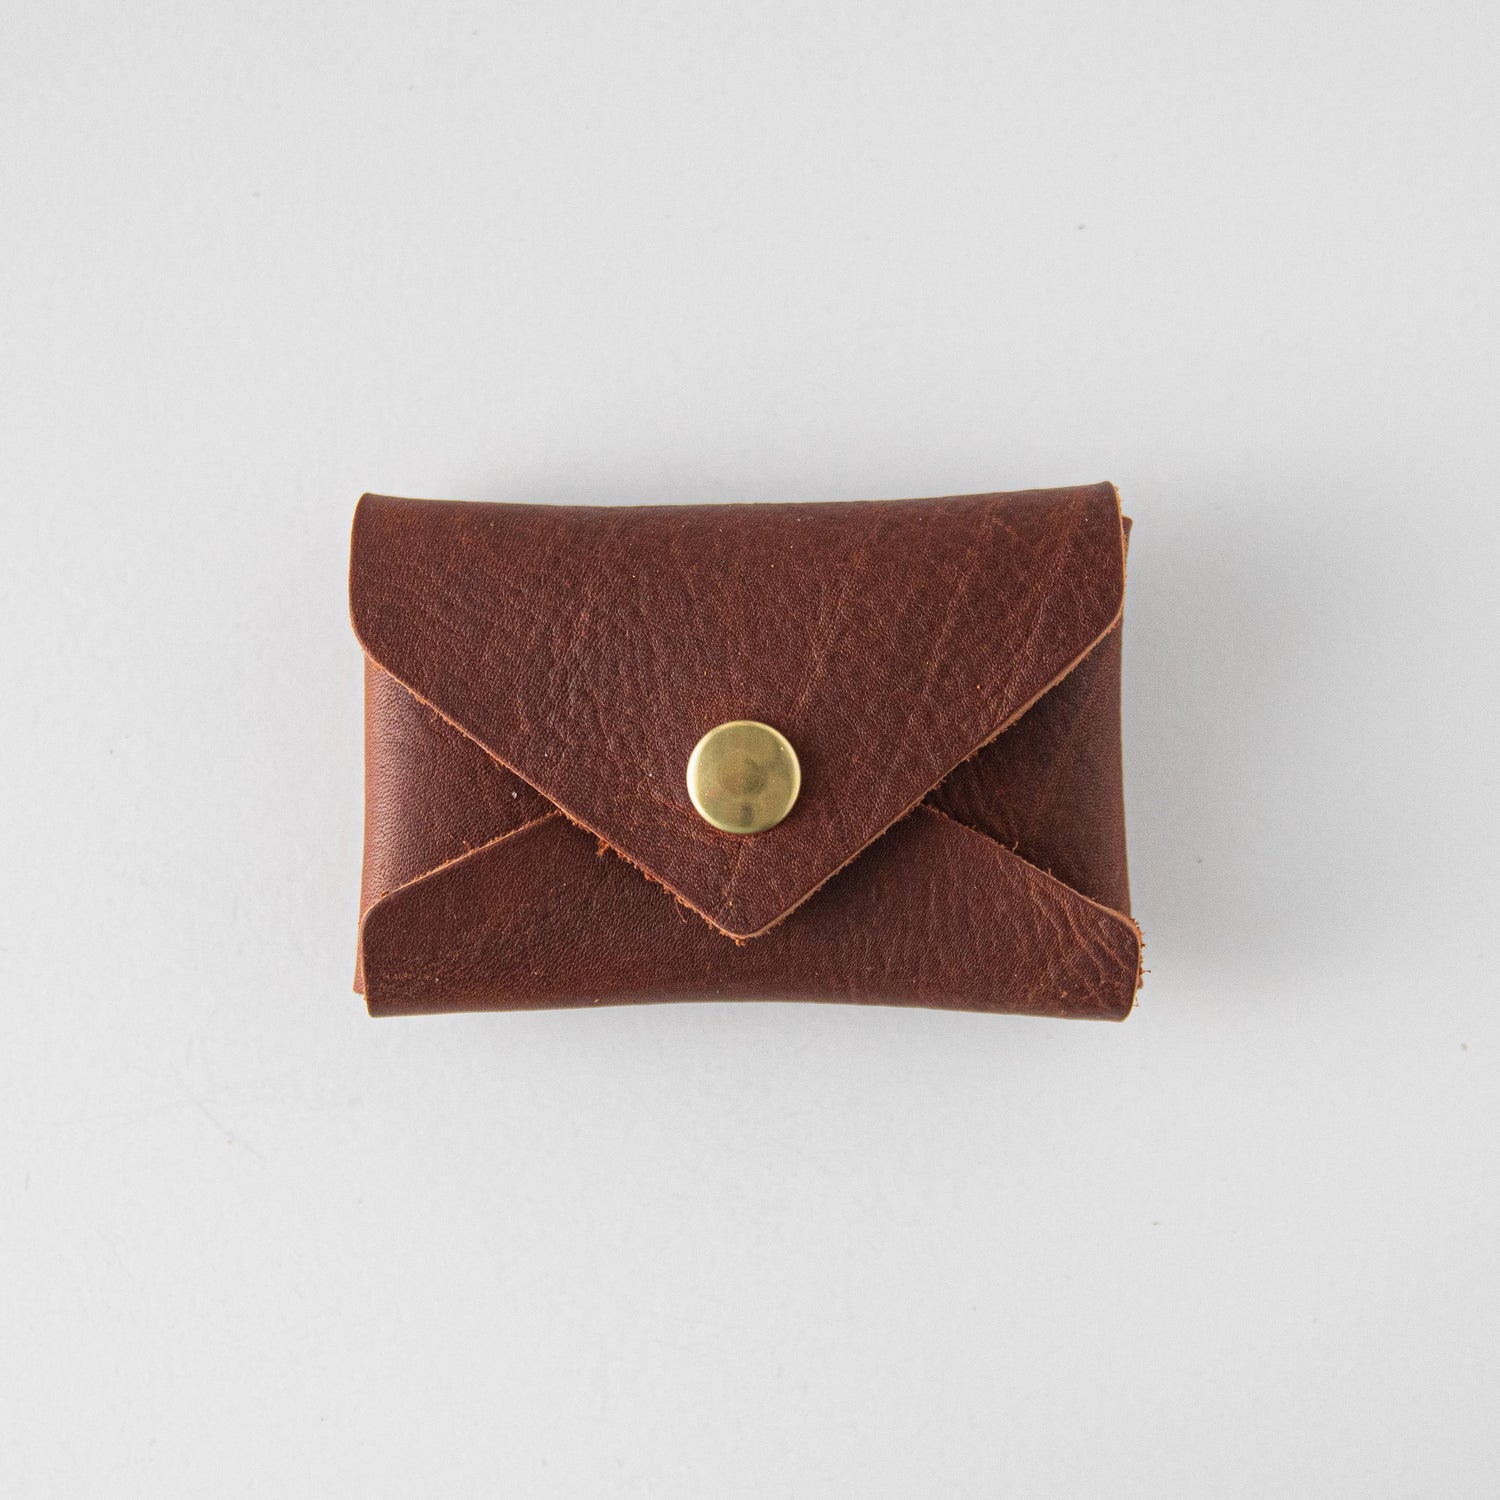 KMM & Co. Men's Slim Leather Wallet